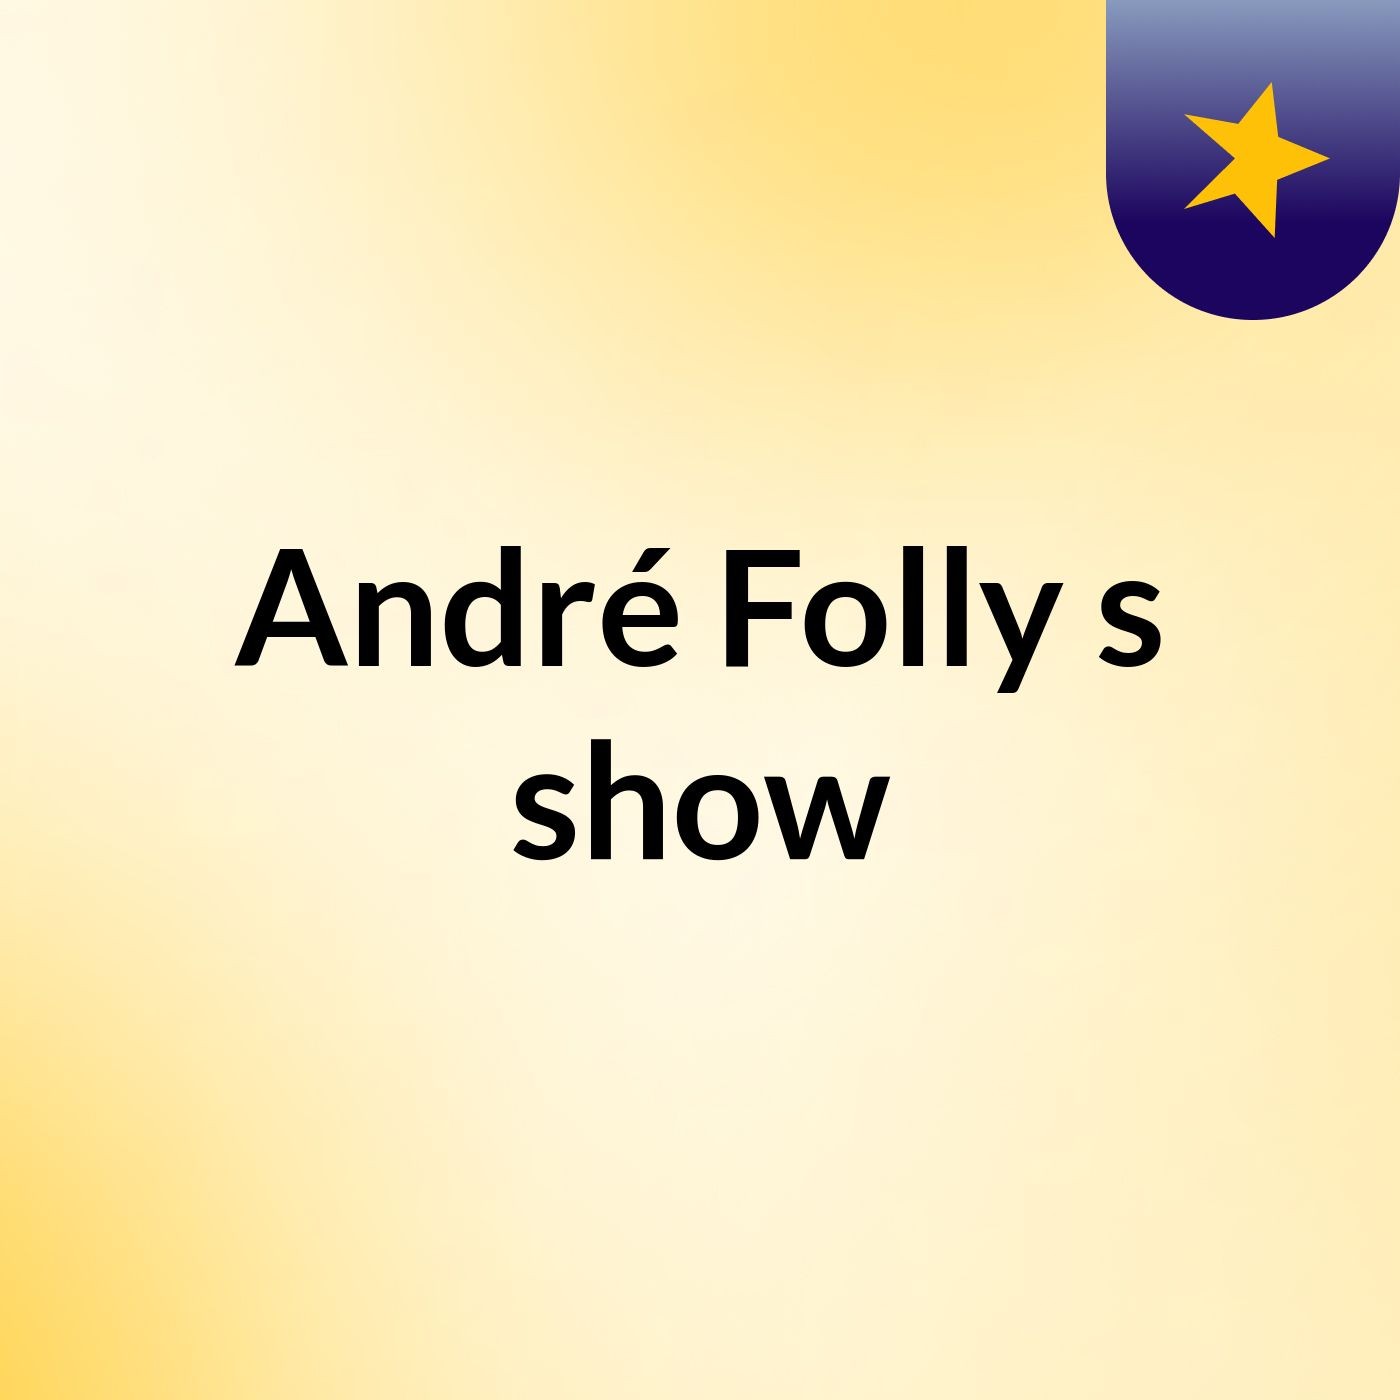 André Folly's show